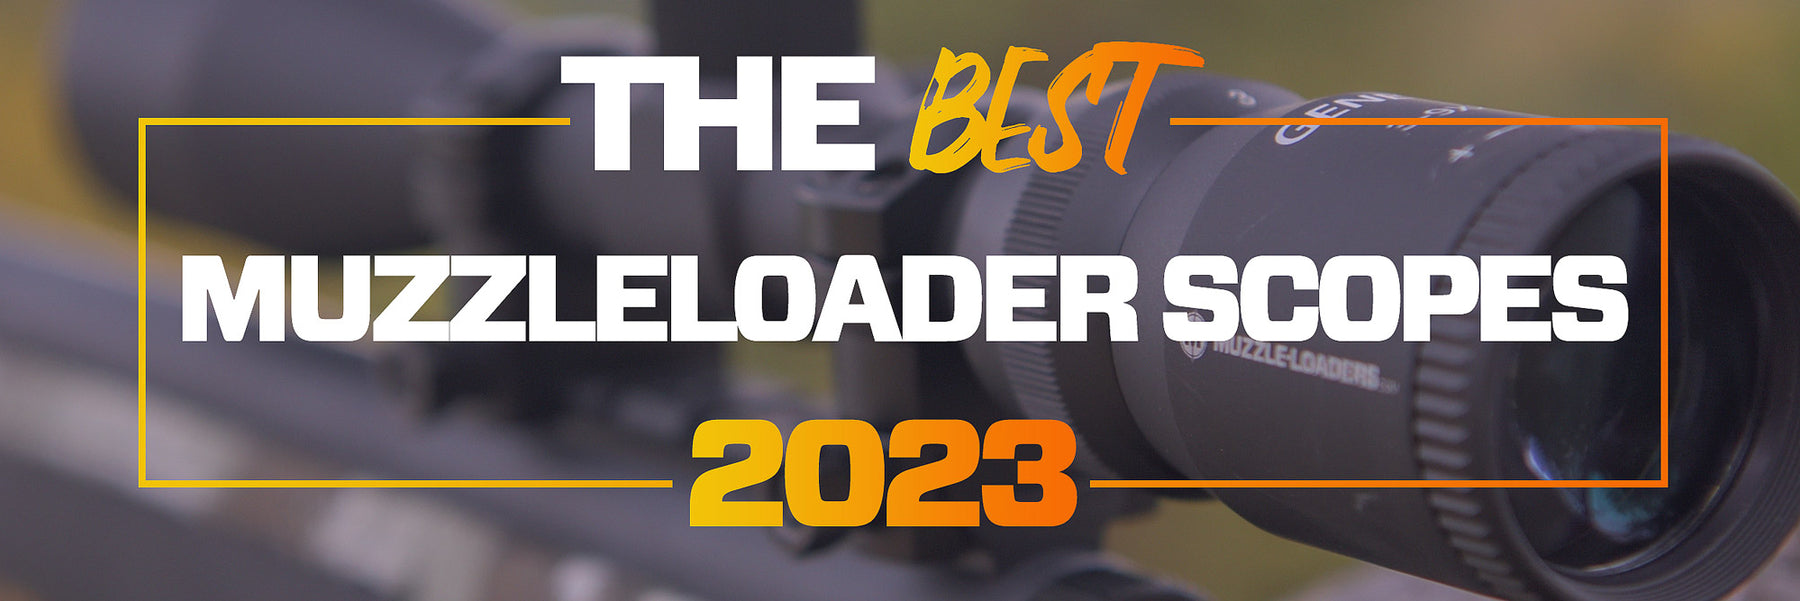 Best Muzzleloader Scopes for 2022